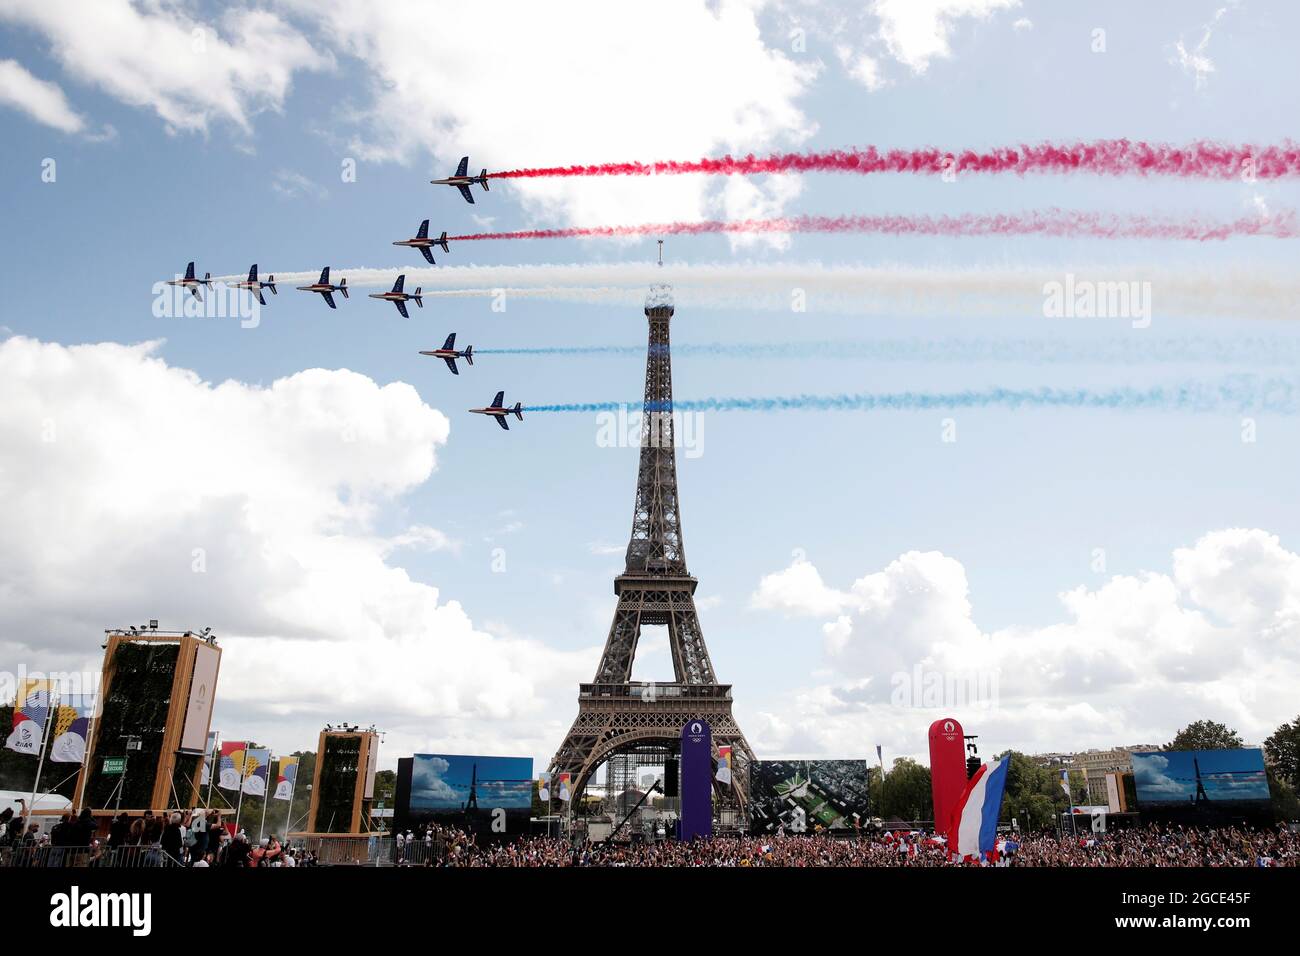 Des jets alpha de la Patrouille de France, l'Armée de l'Air française,  survolent la Tour Eiffel dans la zone des fans des Jeux Olympiques de  Paris, lors de la cérémonie de clôture